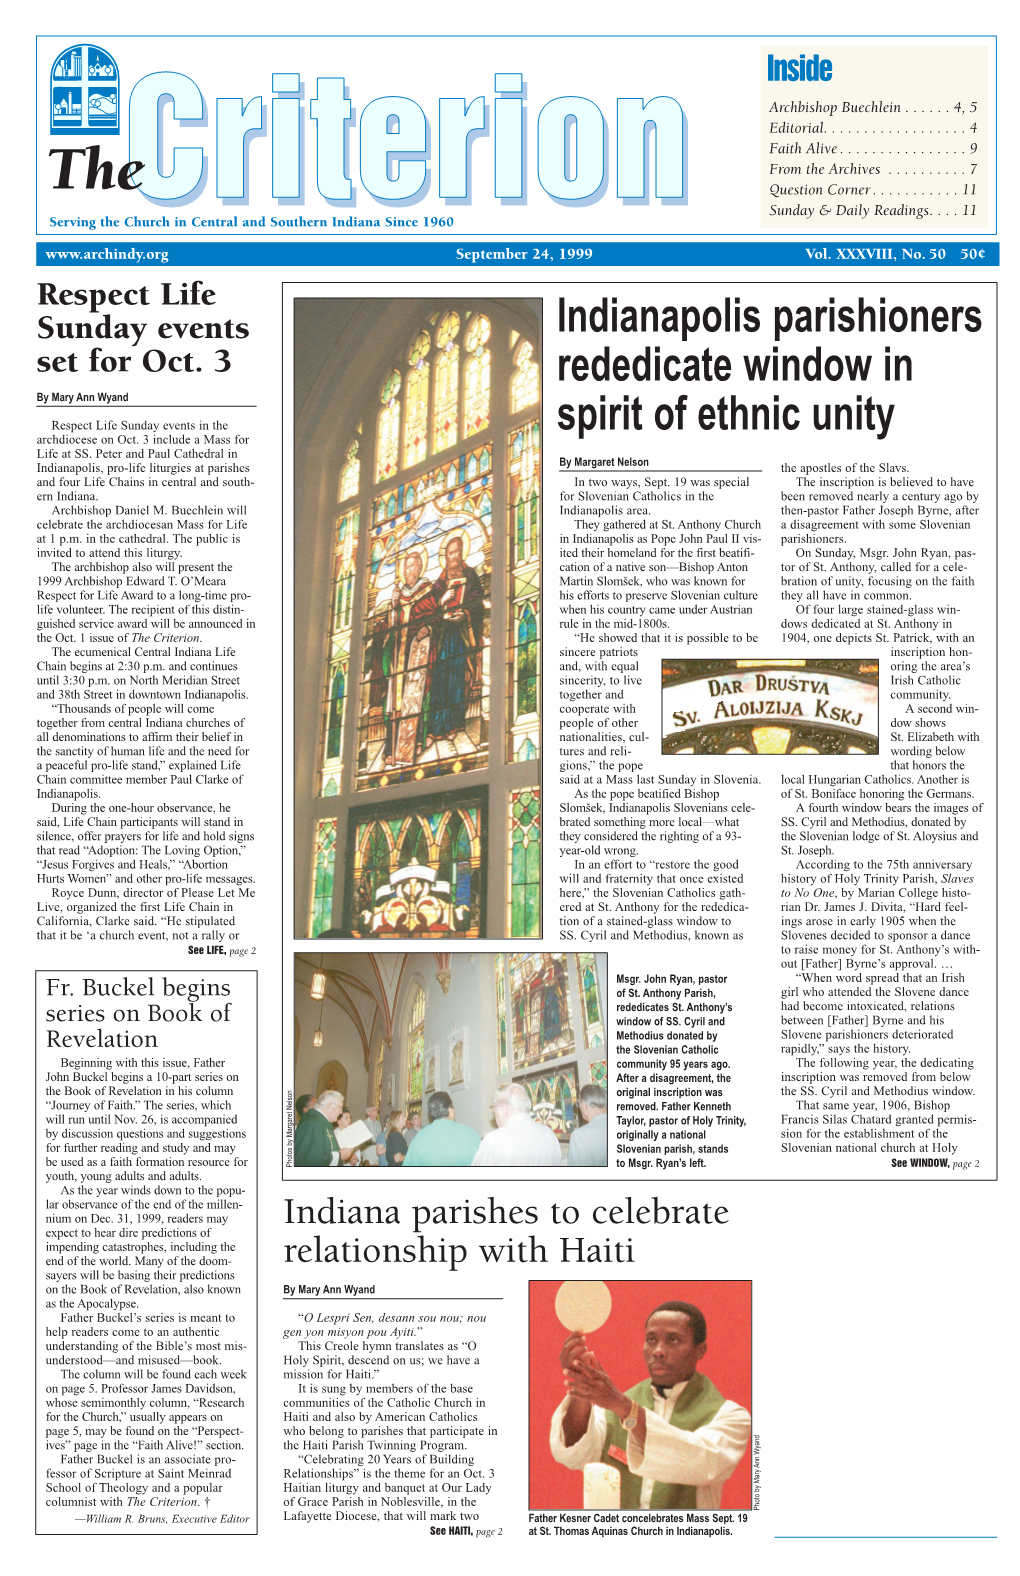 Indianapolis Parishioners Rededicate Window in Spirit of Ethnic Unity